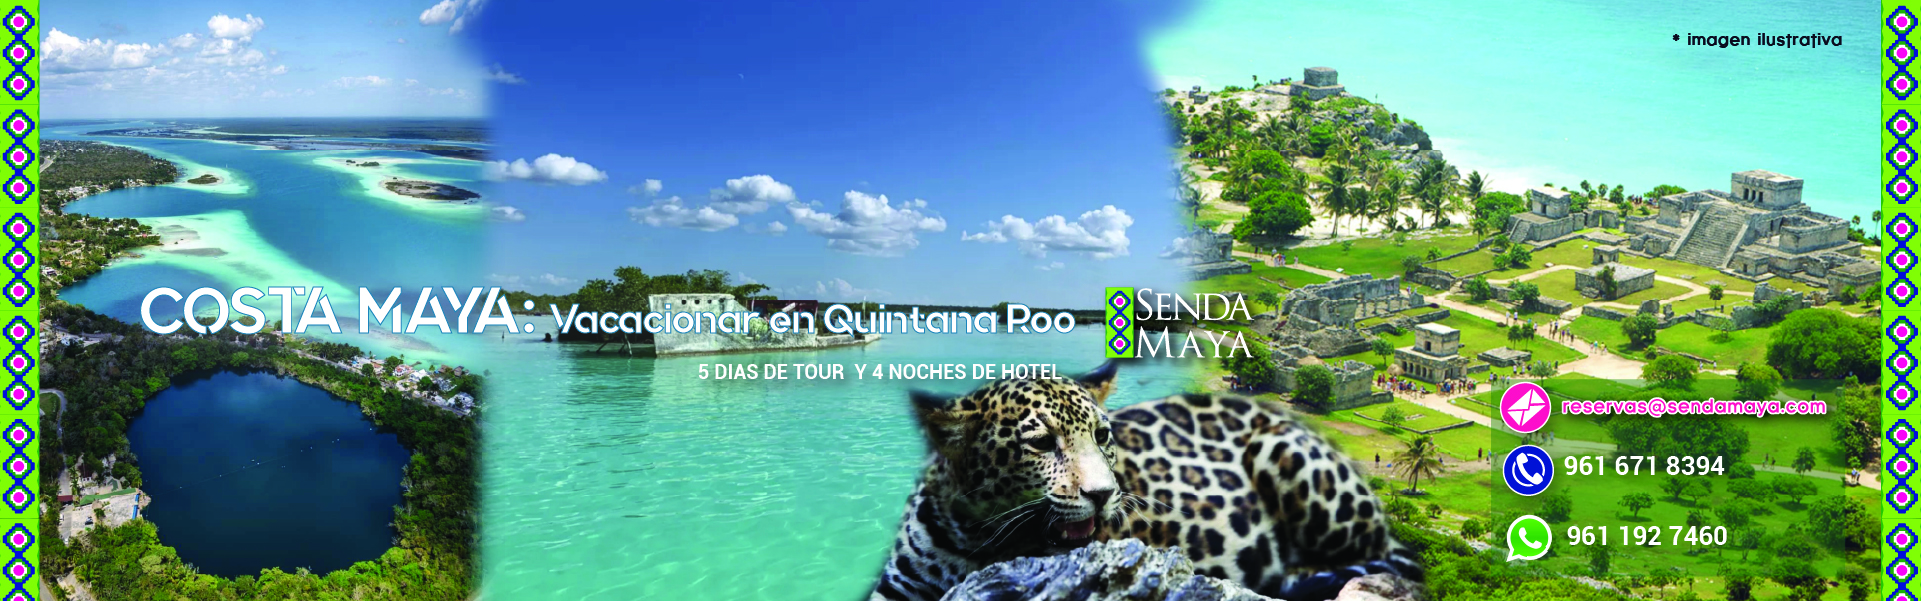 COSTA MAYA Vacacionar en Quintana Roo